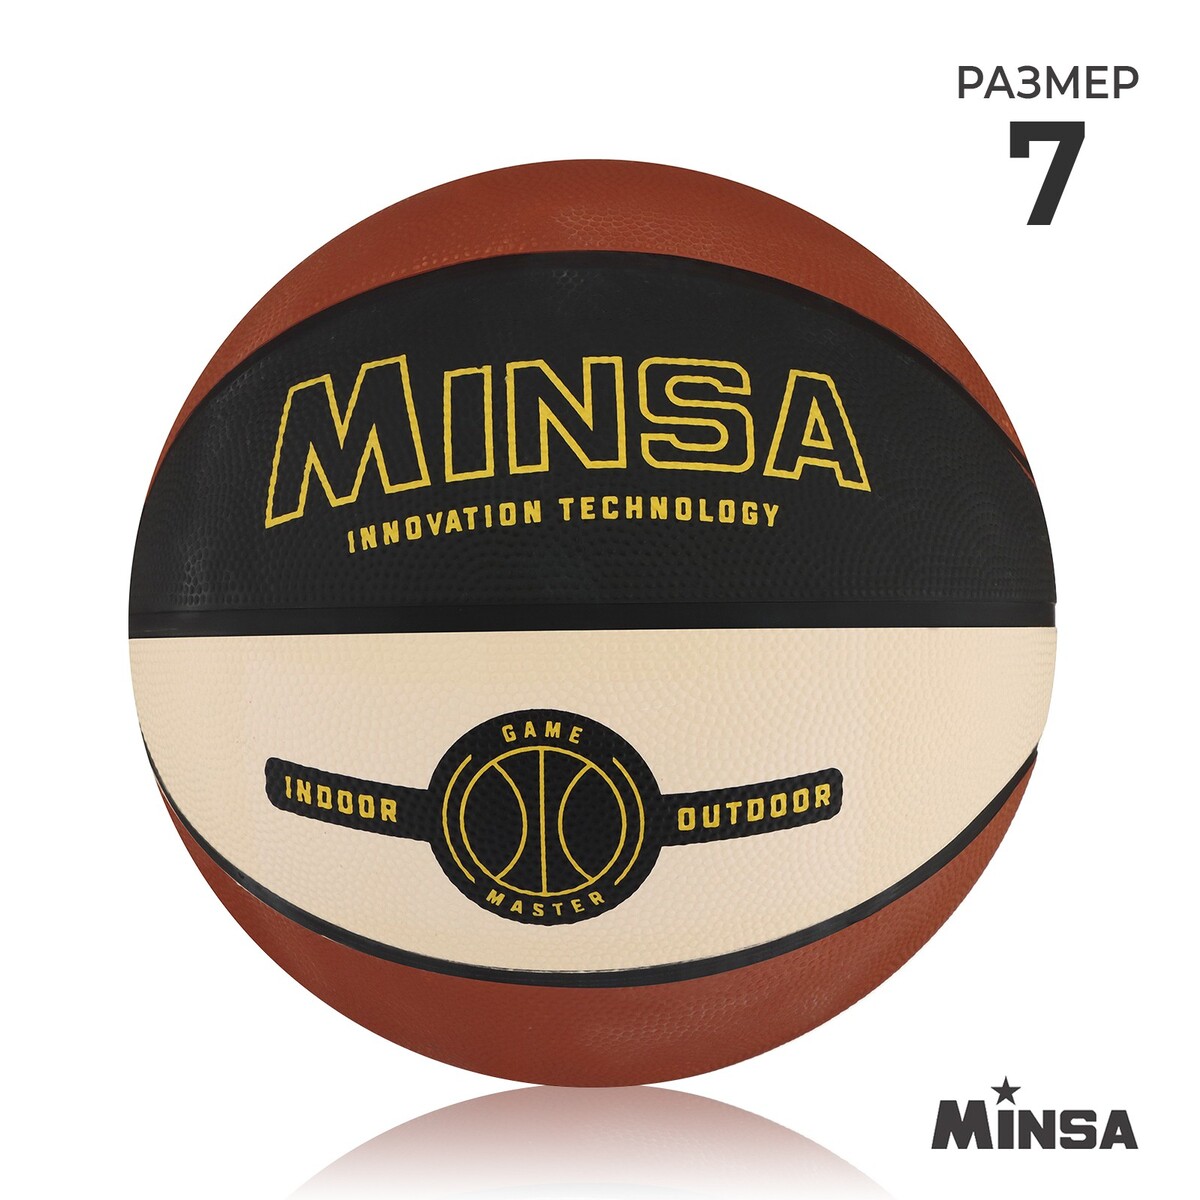 Мяч баскетбольный minsa, пвх, клееный, 8 панелей, р. 7 мяч баскетбольный minsa air power пвх клееный 8 панелей р 7